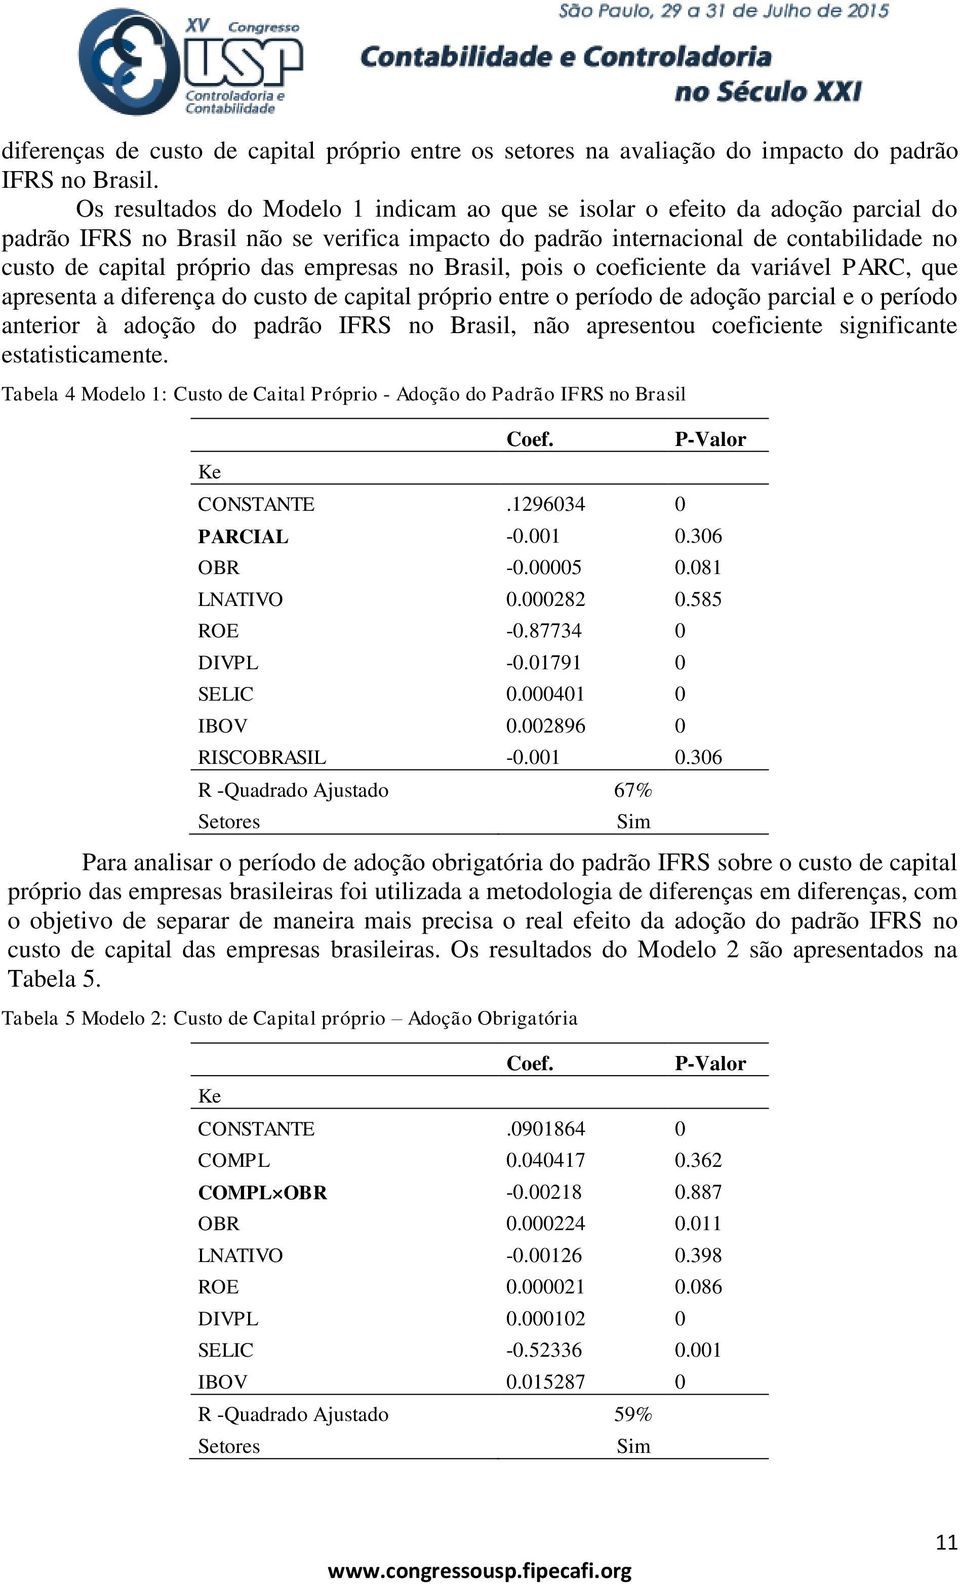 empresas no Brasil, pois o coeficiente da variável PARC, que apresenta a diferença do custo de capital próprio entre o período de adoção parcial e o período anterior à adoção do padrão IFRS no